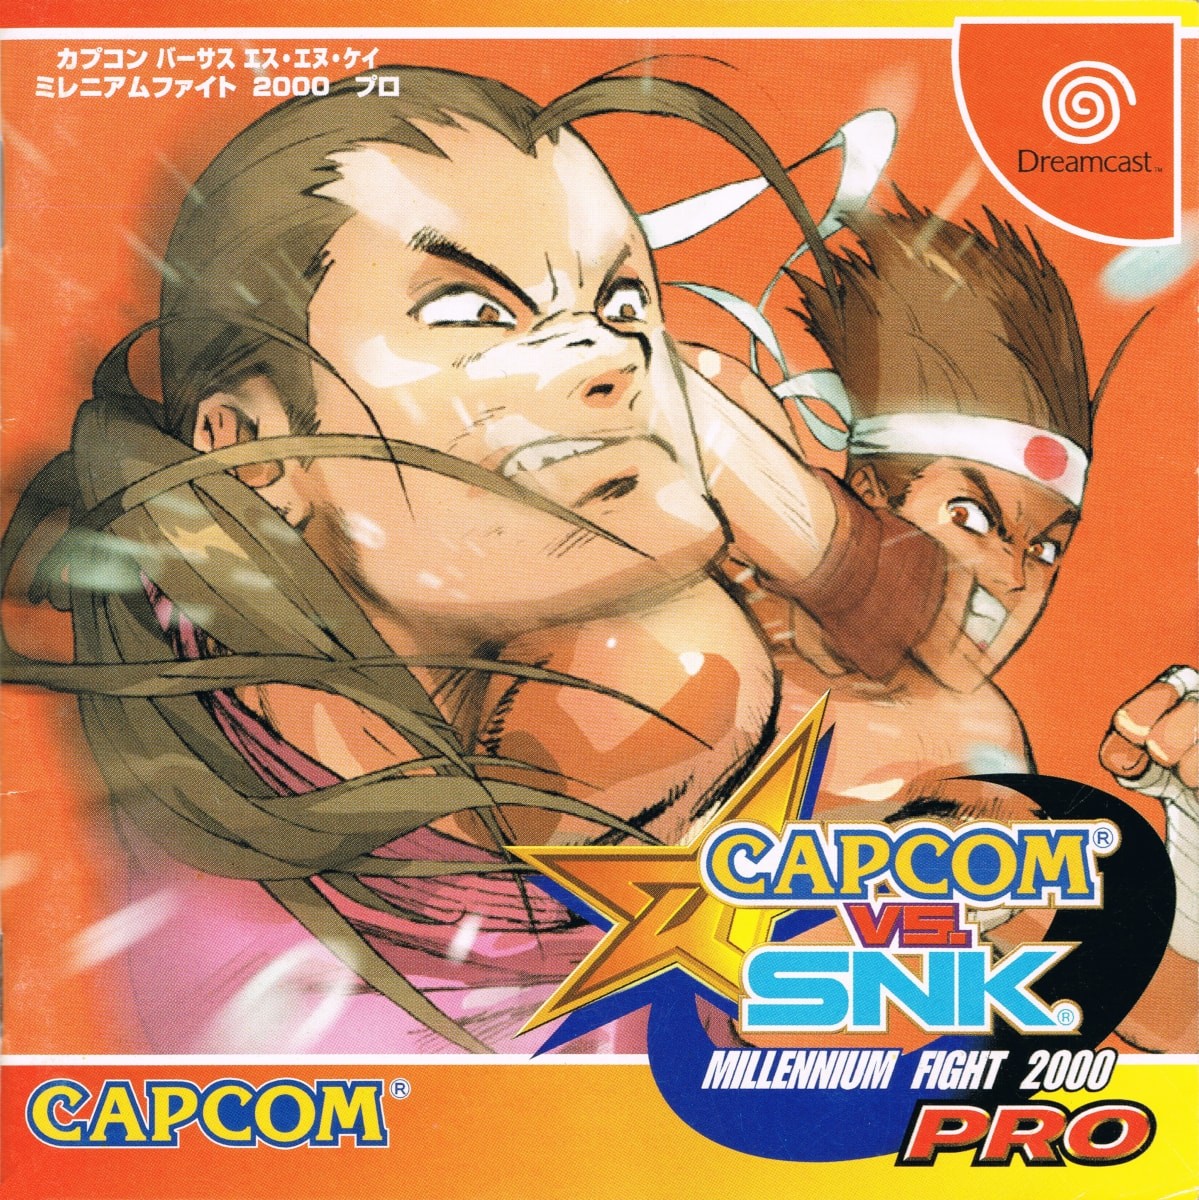 Capa do jogo Capcom vs. SNK Millennium Fight 2000 Pro